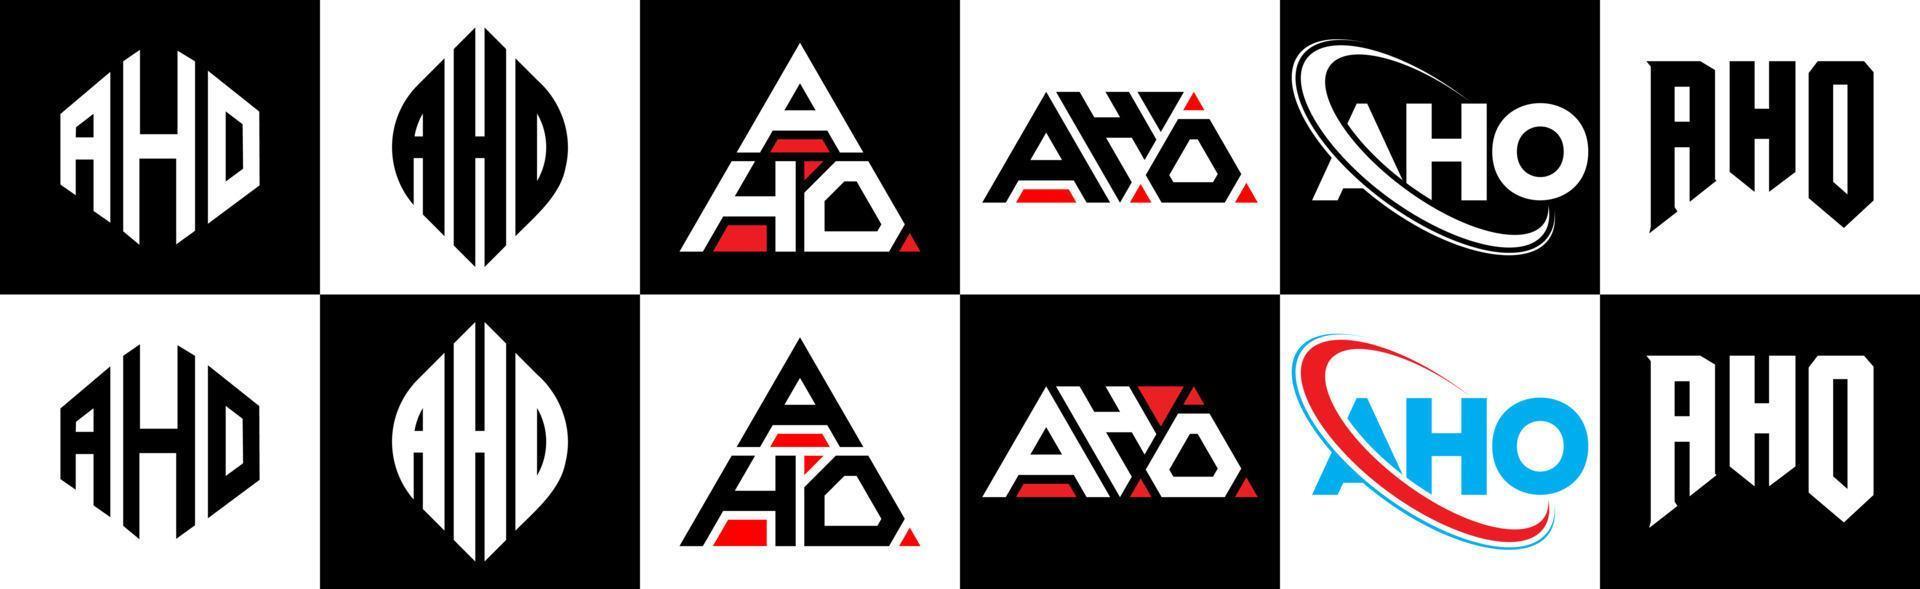 création de logo de lettre aho en six styles. aho polygone, cercle, triangle, hexagone, style plat et simple avec logo de lettre de variation de couleur noir et blanc dans un plan de travail. aho logo minimaliste et classique vecteur